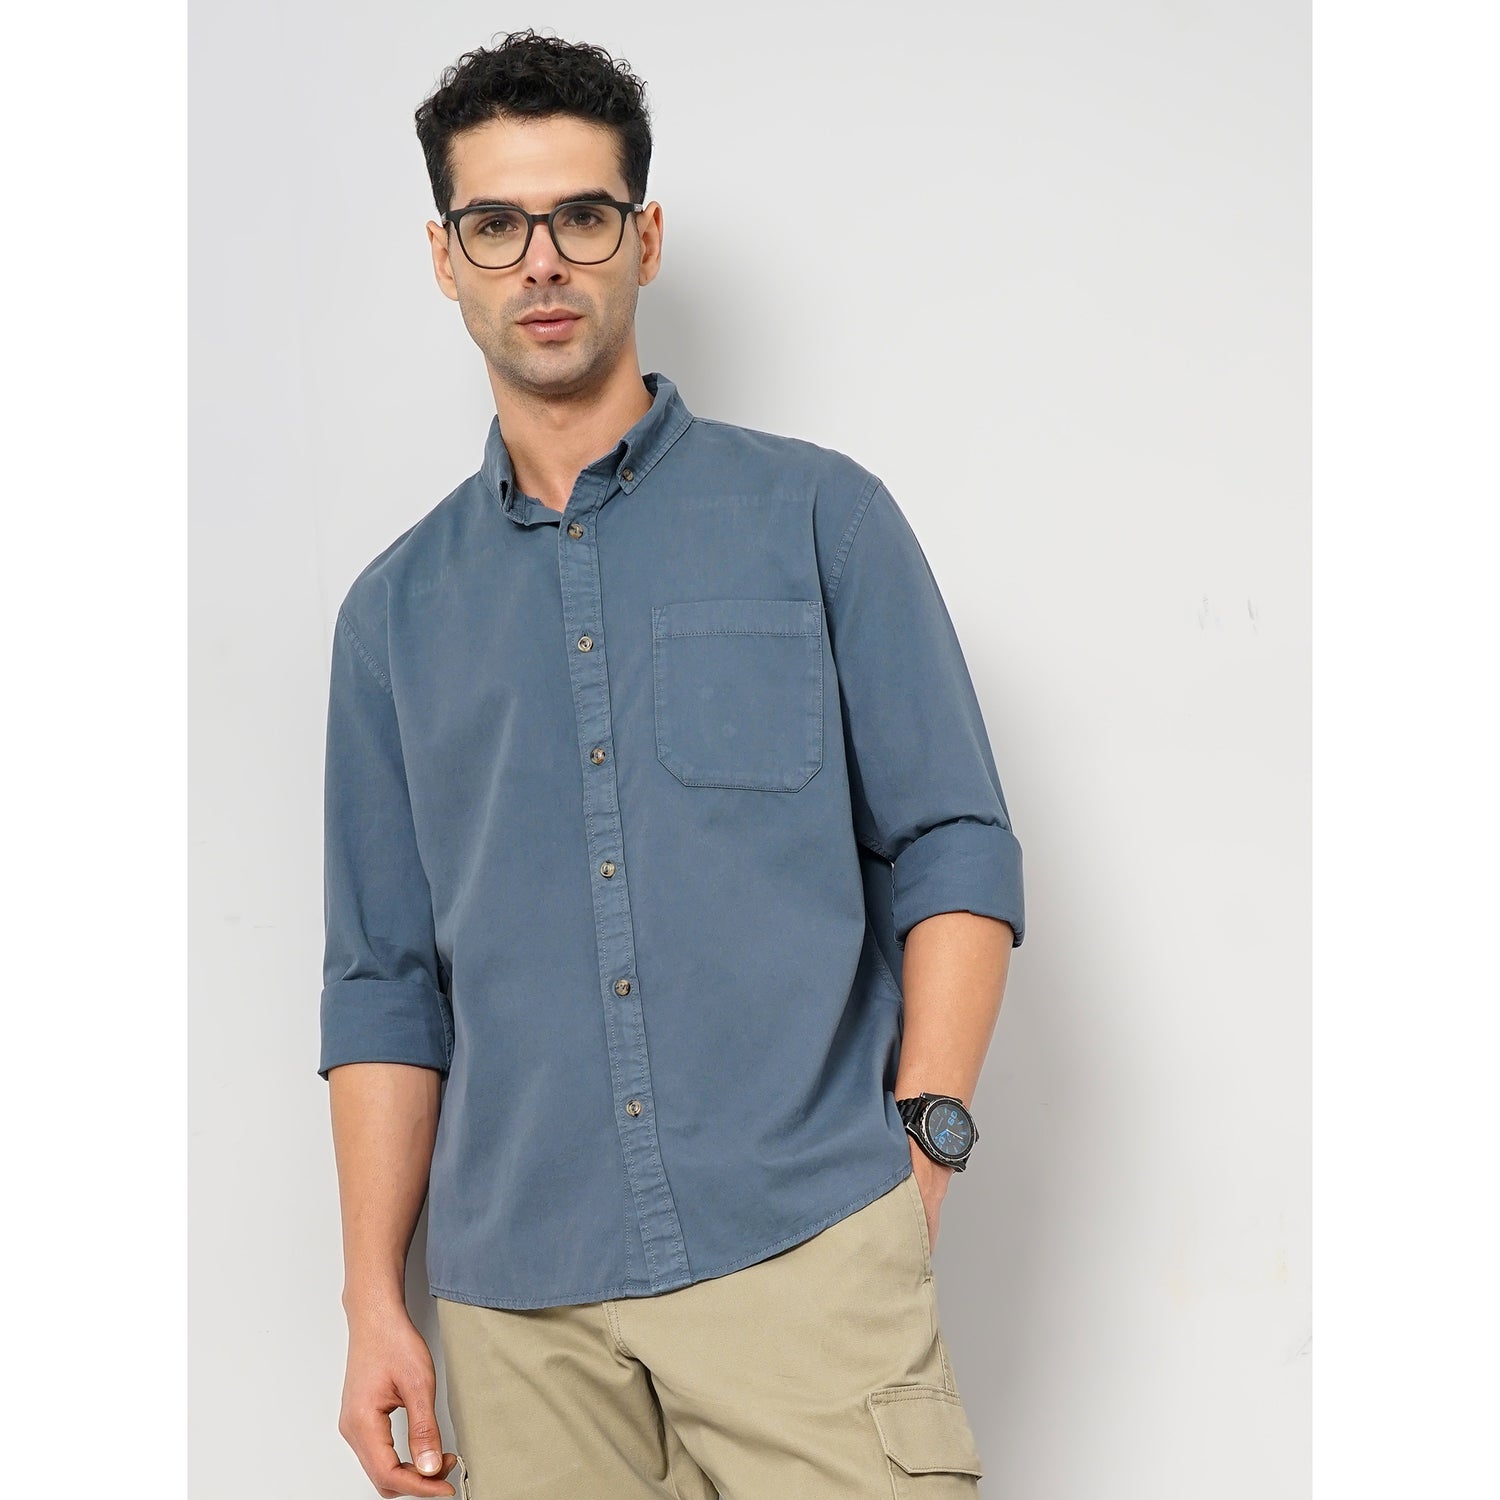 Men's Blue Solid Regular Fit Cotton Shirt (GAPEACH)